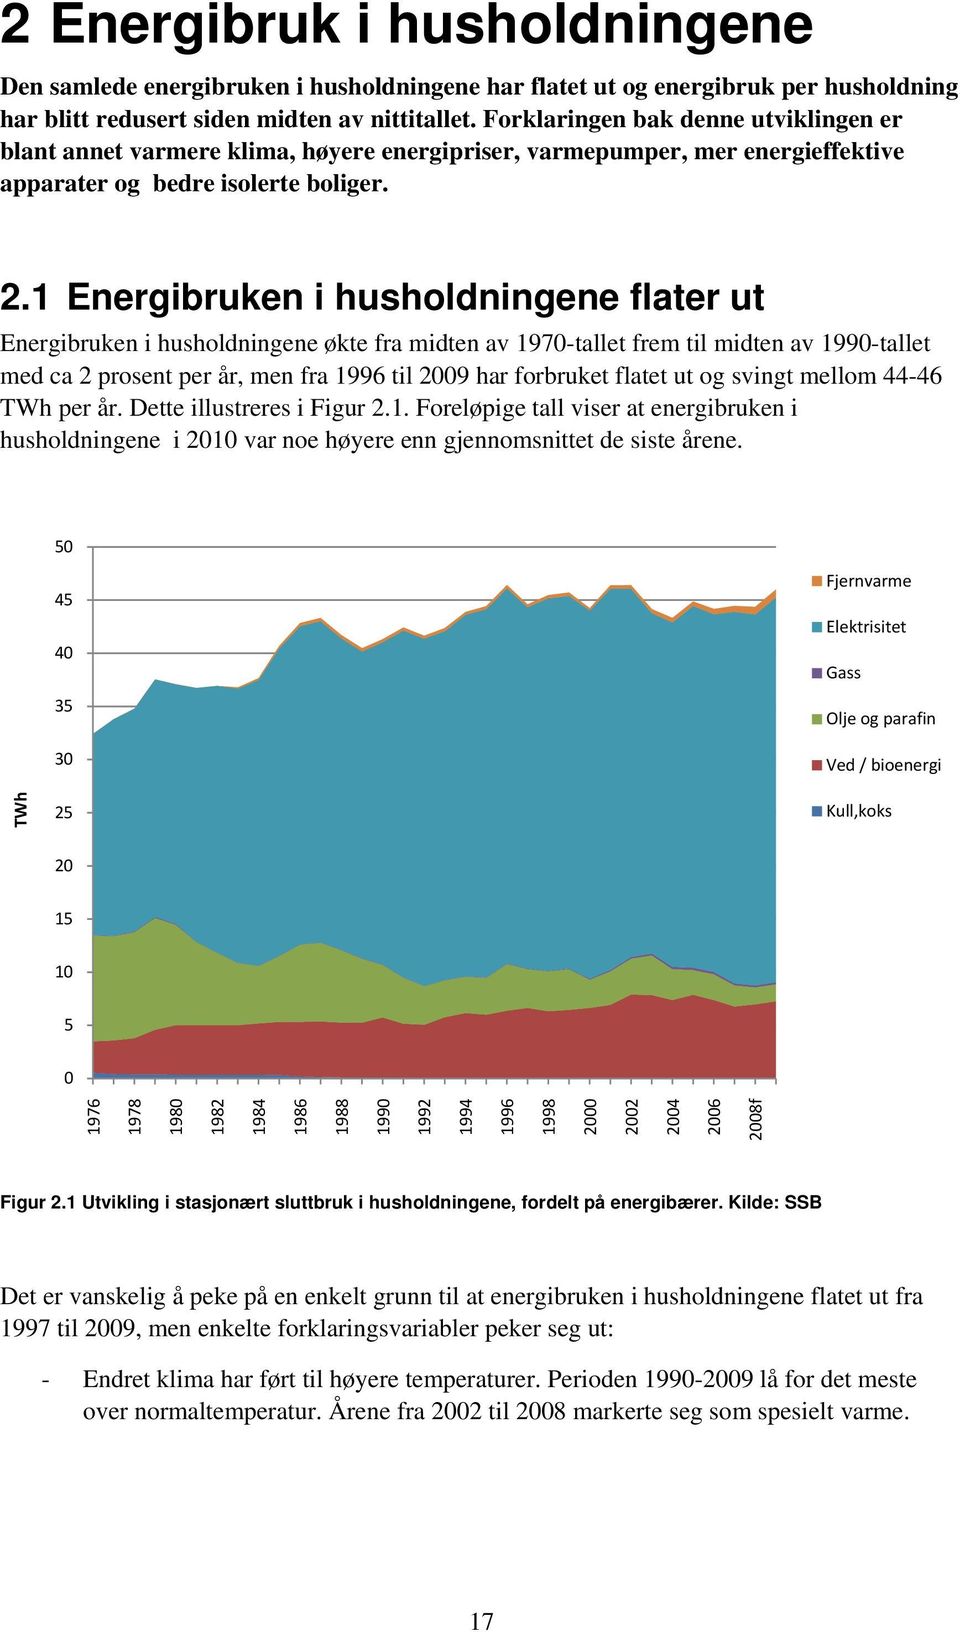 1 Energibruken i husholdningene flater ut Energibruken i husholdningene økte fra midten av 1970-tallet frem til midten av 1990-tallet med ca 2 prosent per år, men fra 1996 til 2009 har forbruket